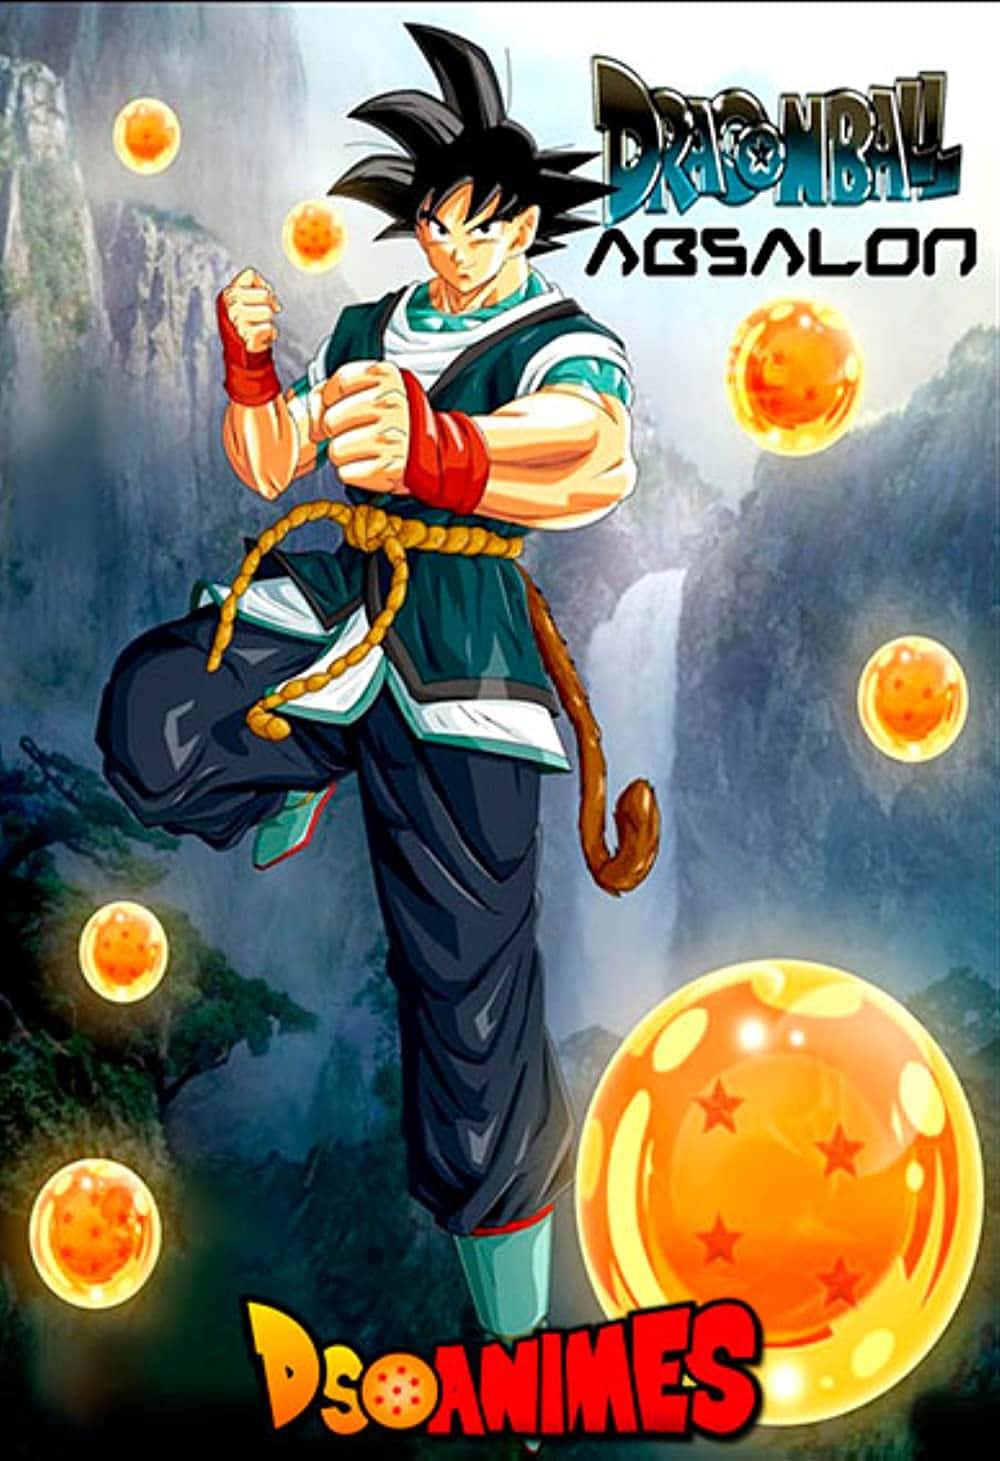 Einintensiver Kampf, Goku Als Super Saiyan Gott, Der Einen Verheerenden Kamehameha Auf Frieza Abfeuert.